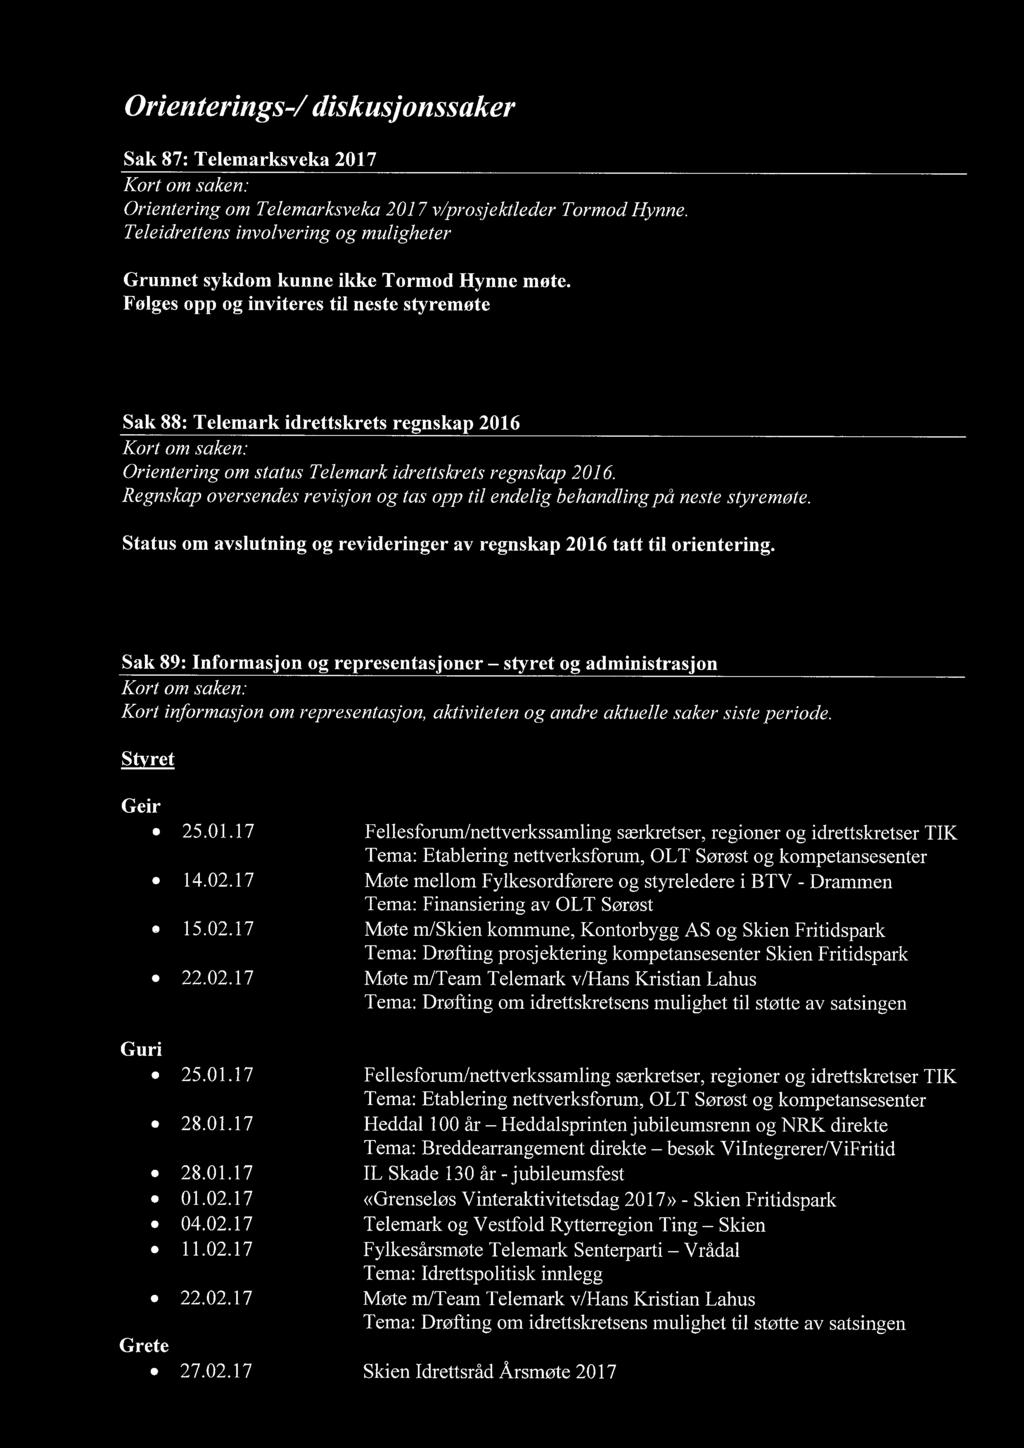 Følges opp og inviteres til neste styremøte Sak 88: Telemark idrettskrets regnskap 2016 Orientering om status Telemark idrettskrets regnskap 2016.